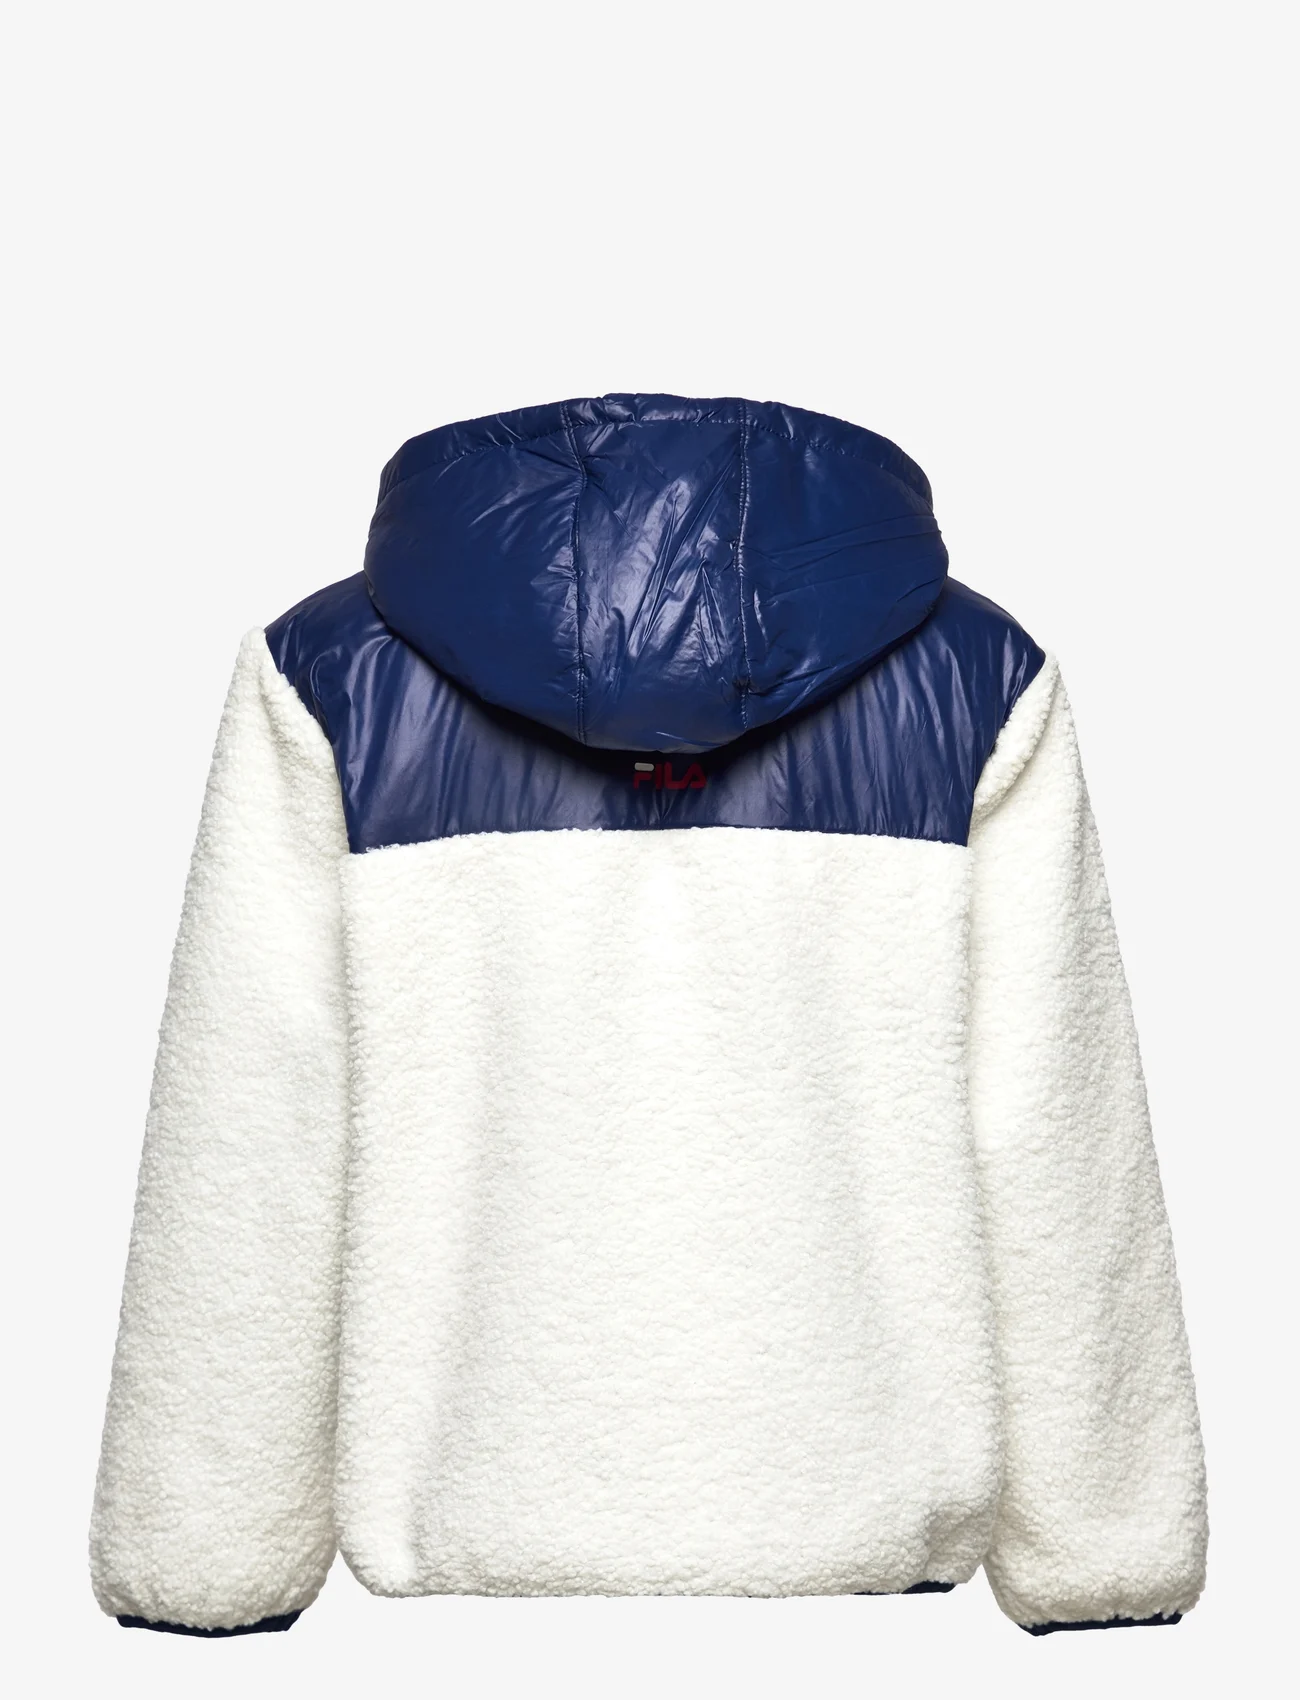 FILA - BORDEAUX sherpa jacket - fleece jassen - egret-medieval blue - 1